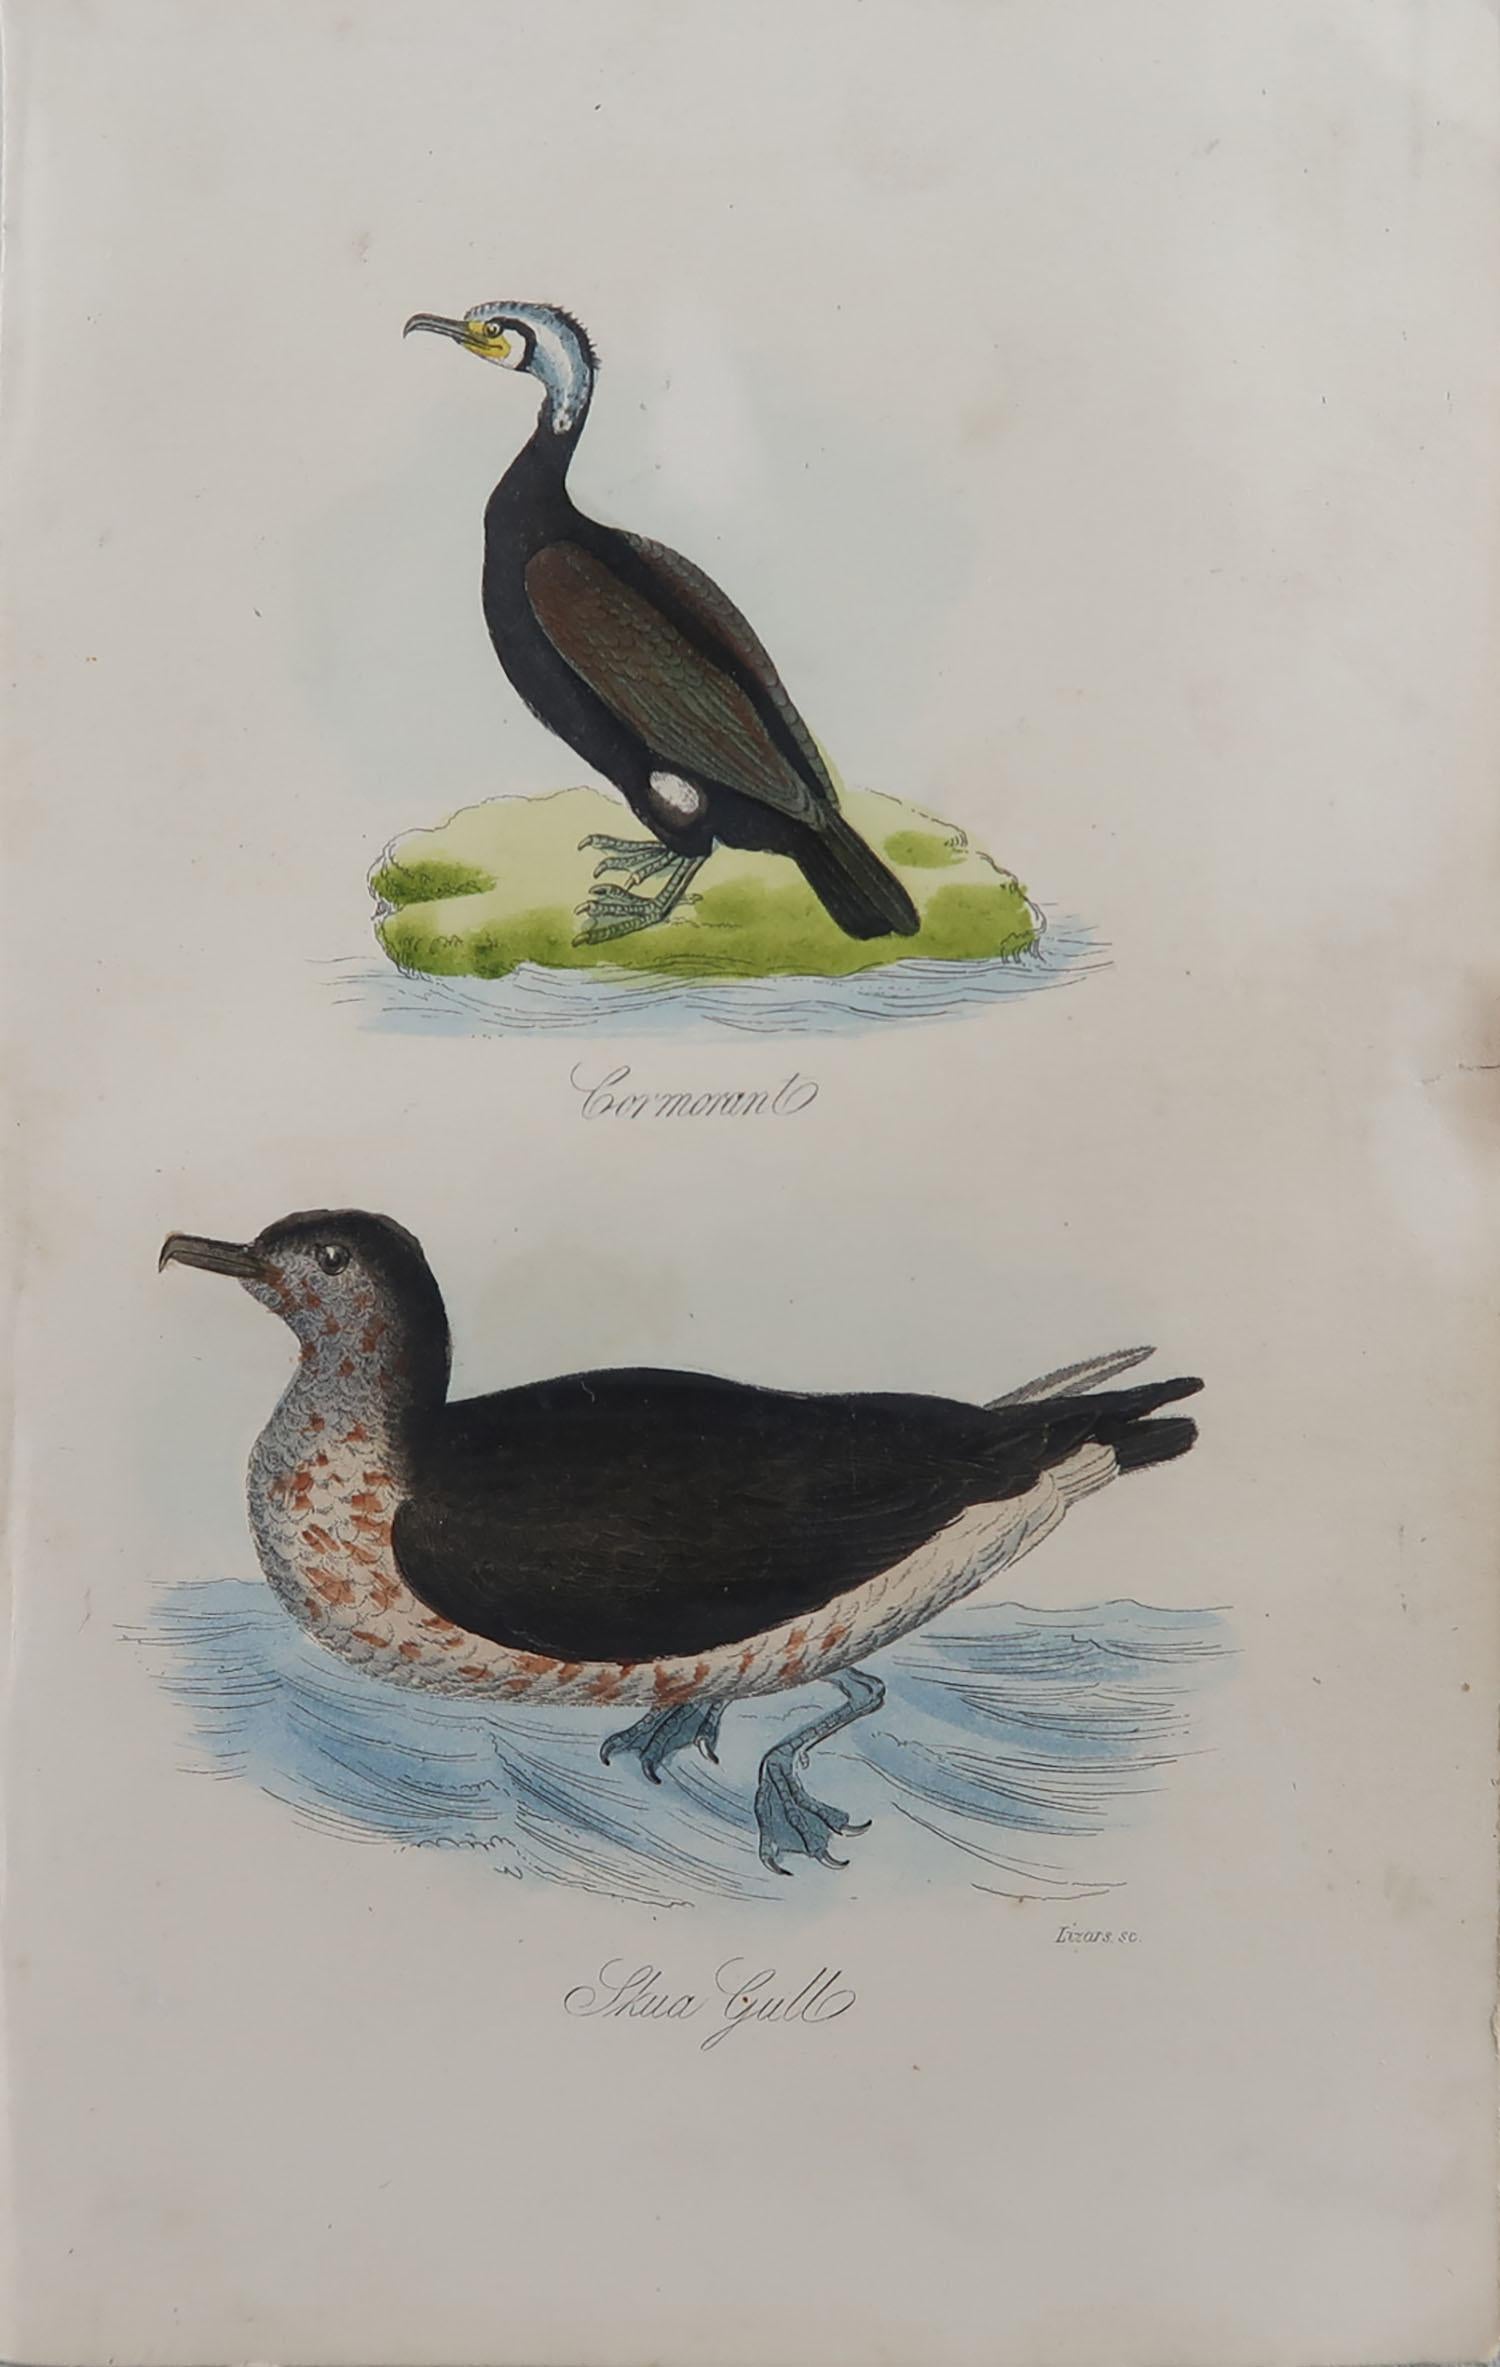 Folk Art Original Antique Bird Print, Cormorant and a Skua Gull, circa 1850